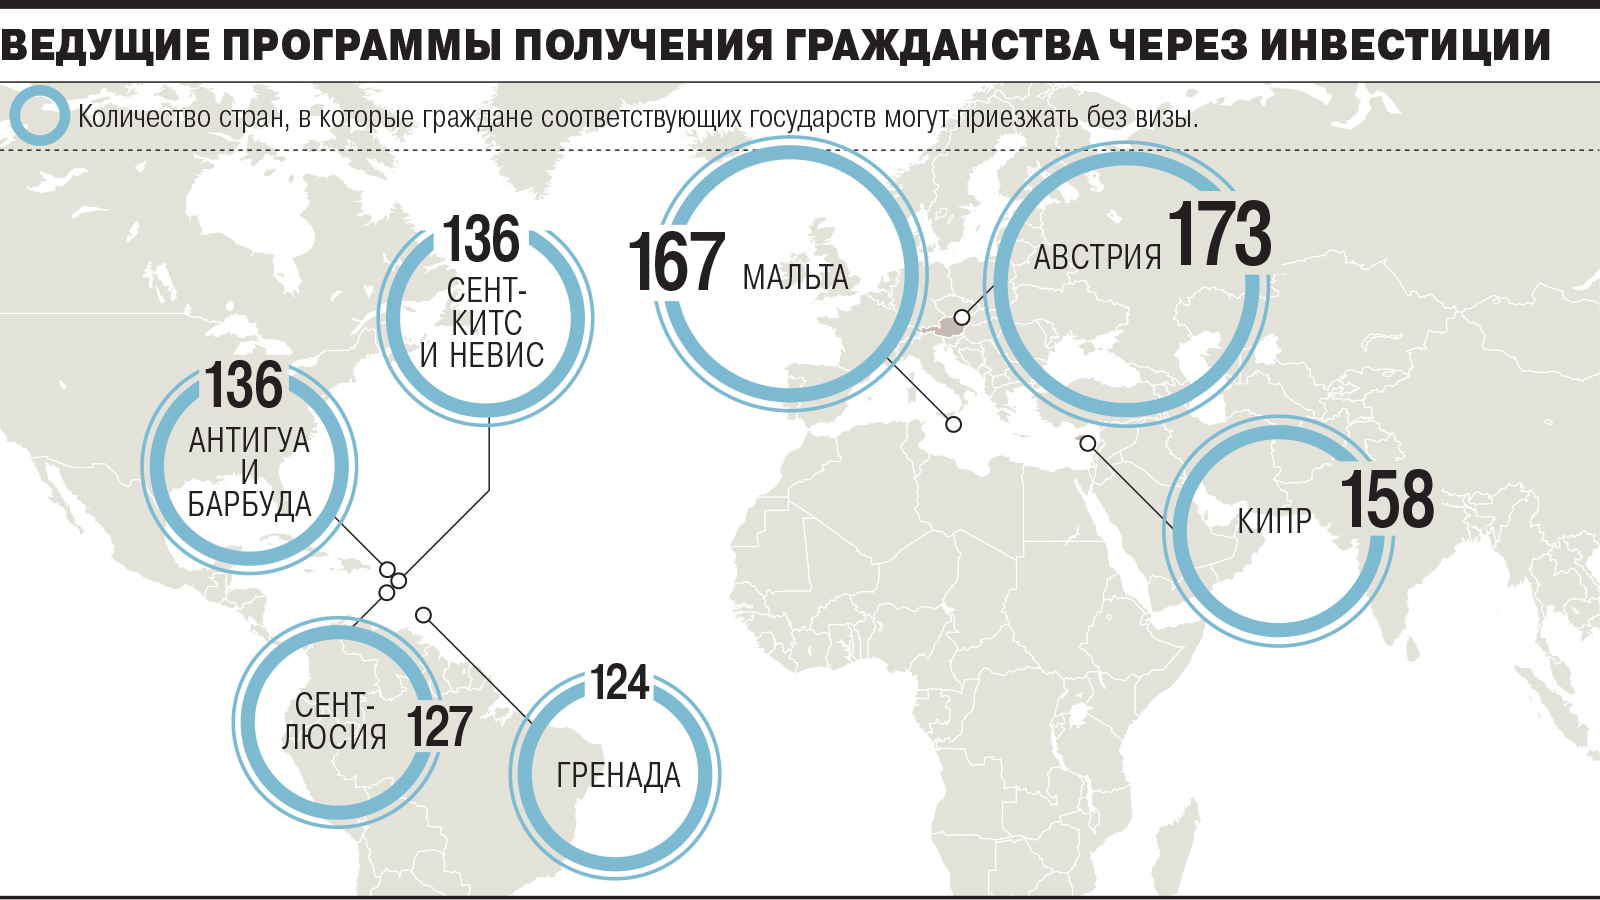 Henley & partners назвала самые «сильные» паспорта в мире. на каком месте оказалась россия и где рекомендуют получить гражданство за инвестиции